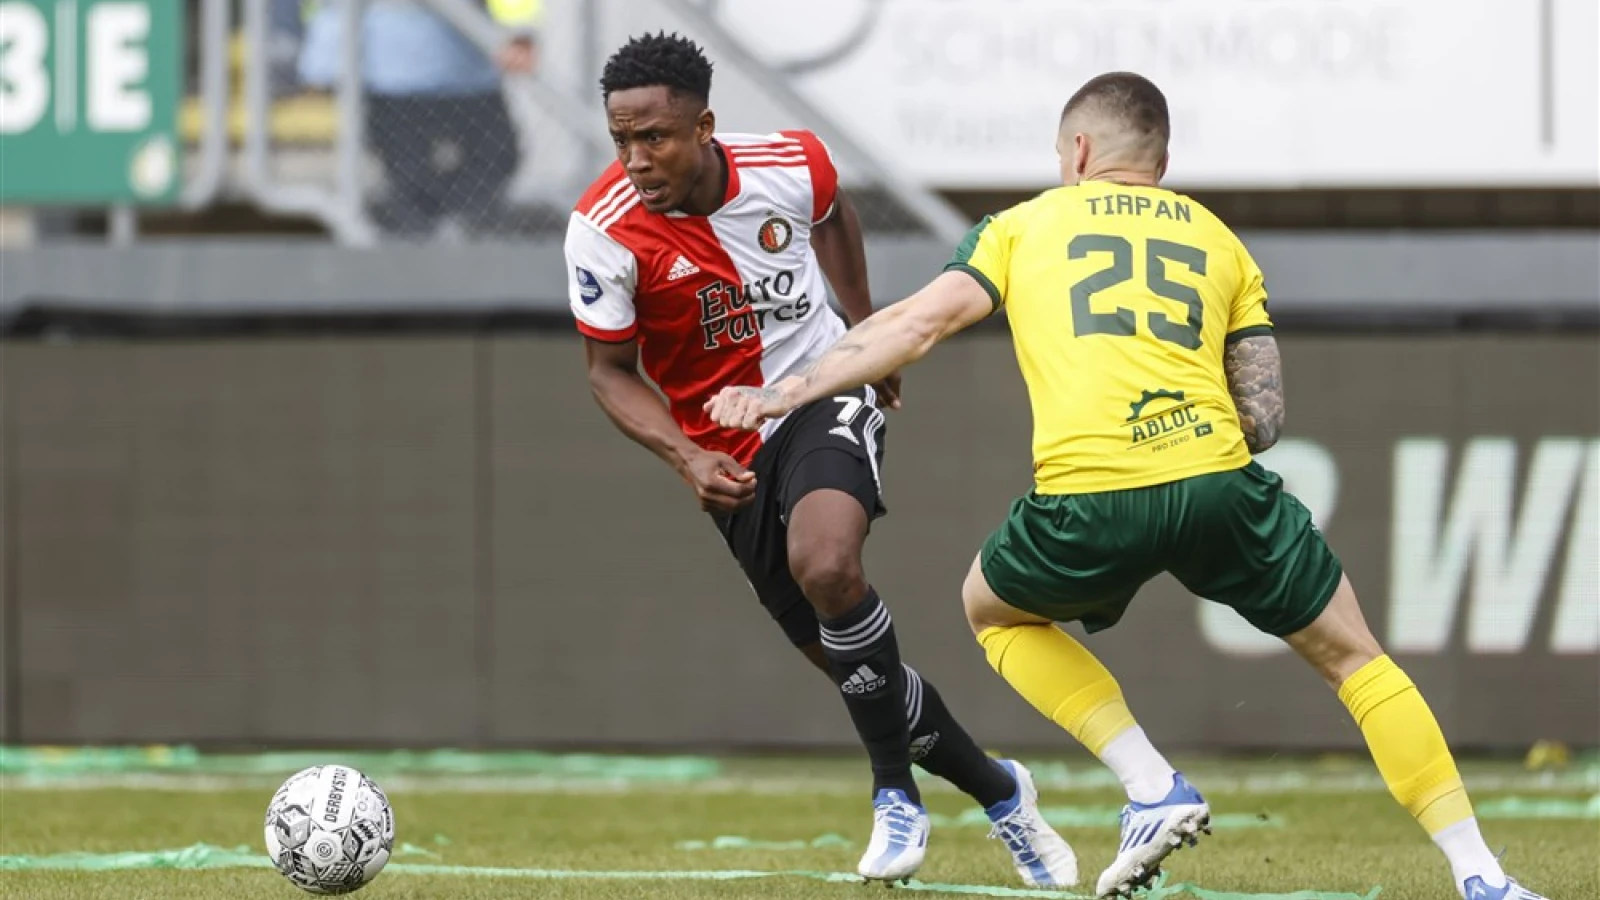 LIVE | Fortuna Sittard - Feyenoord 1-3 | Einde wedstrijd